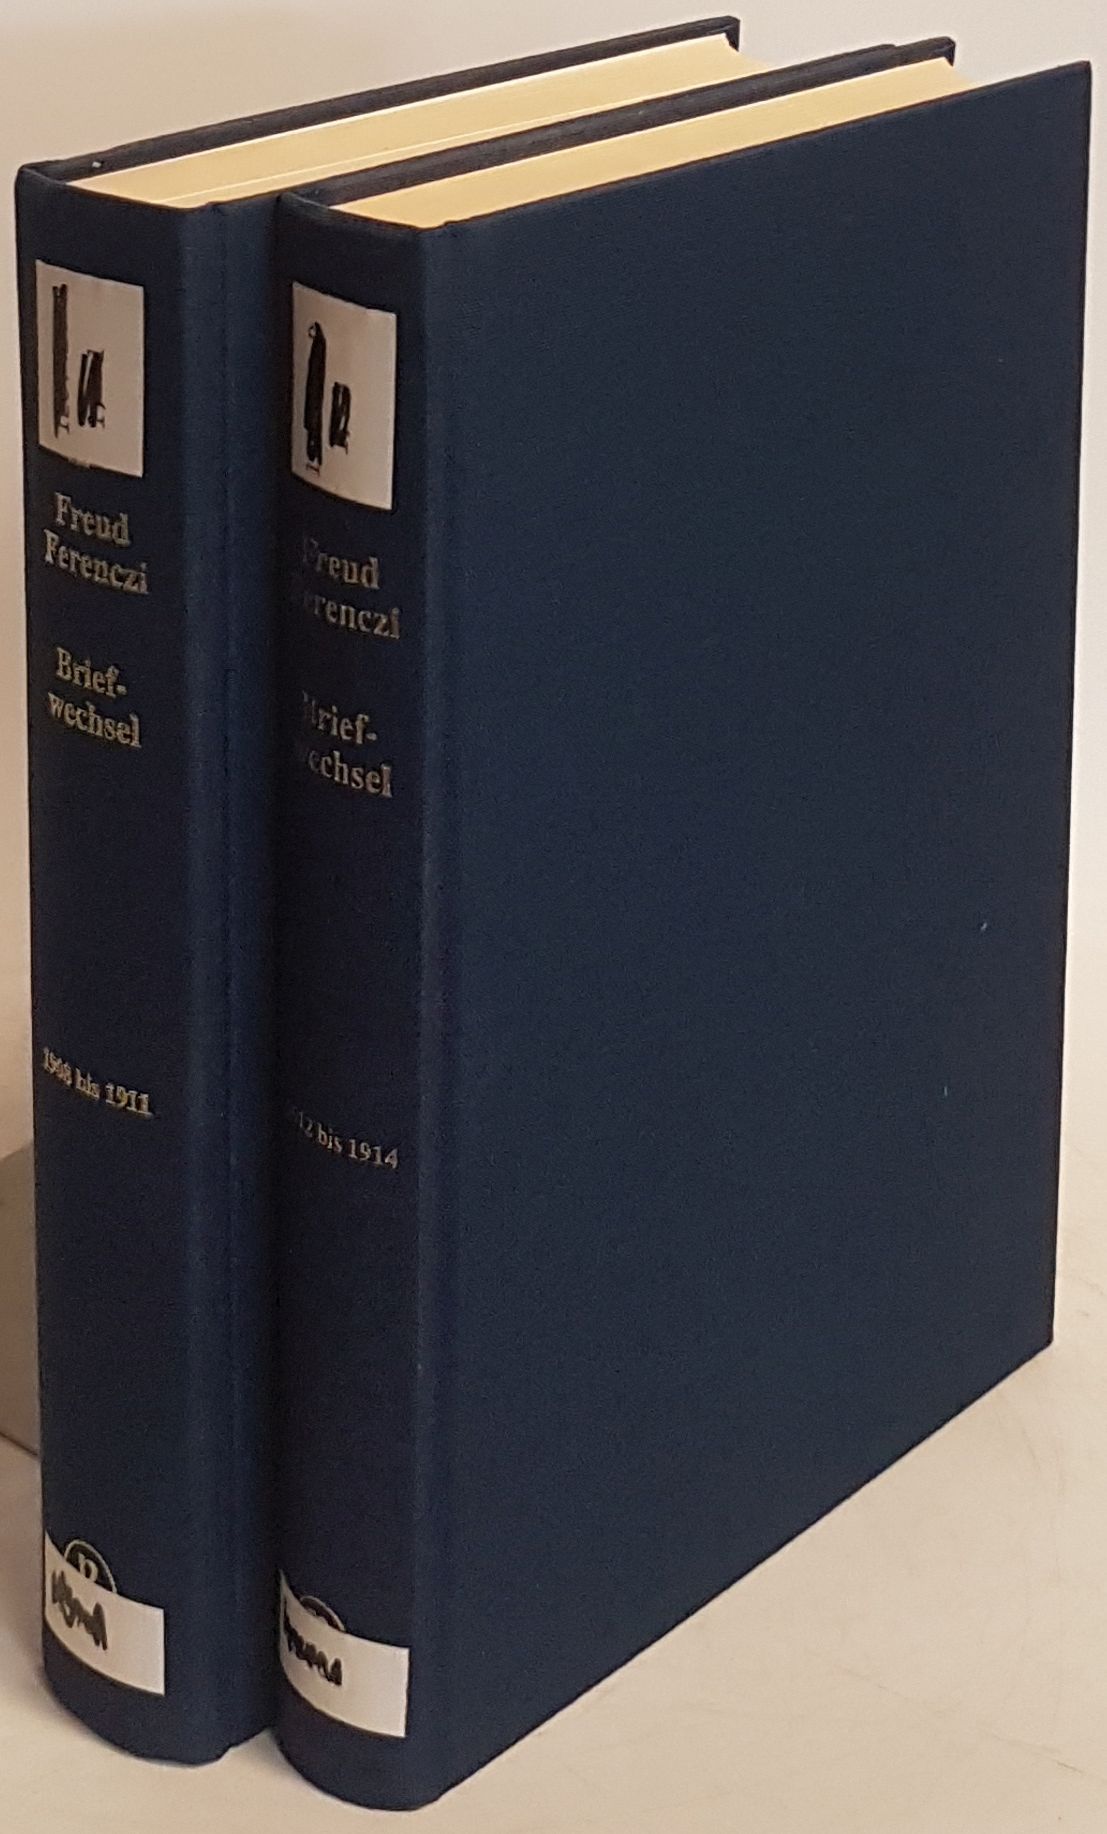 Sigmund Freud - Sandor Ferenczi: Briefwechsel: BAND I (2 Teile) - 1908 - 1914. hrsg. von Eva Brabant, Ernst Falzeder, Patrizia Giampieri-Deutsch